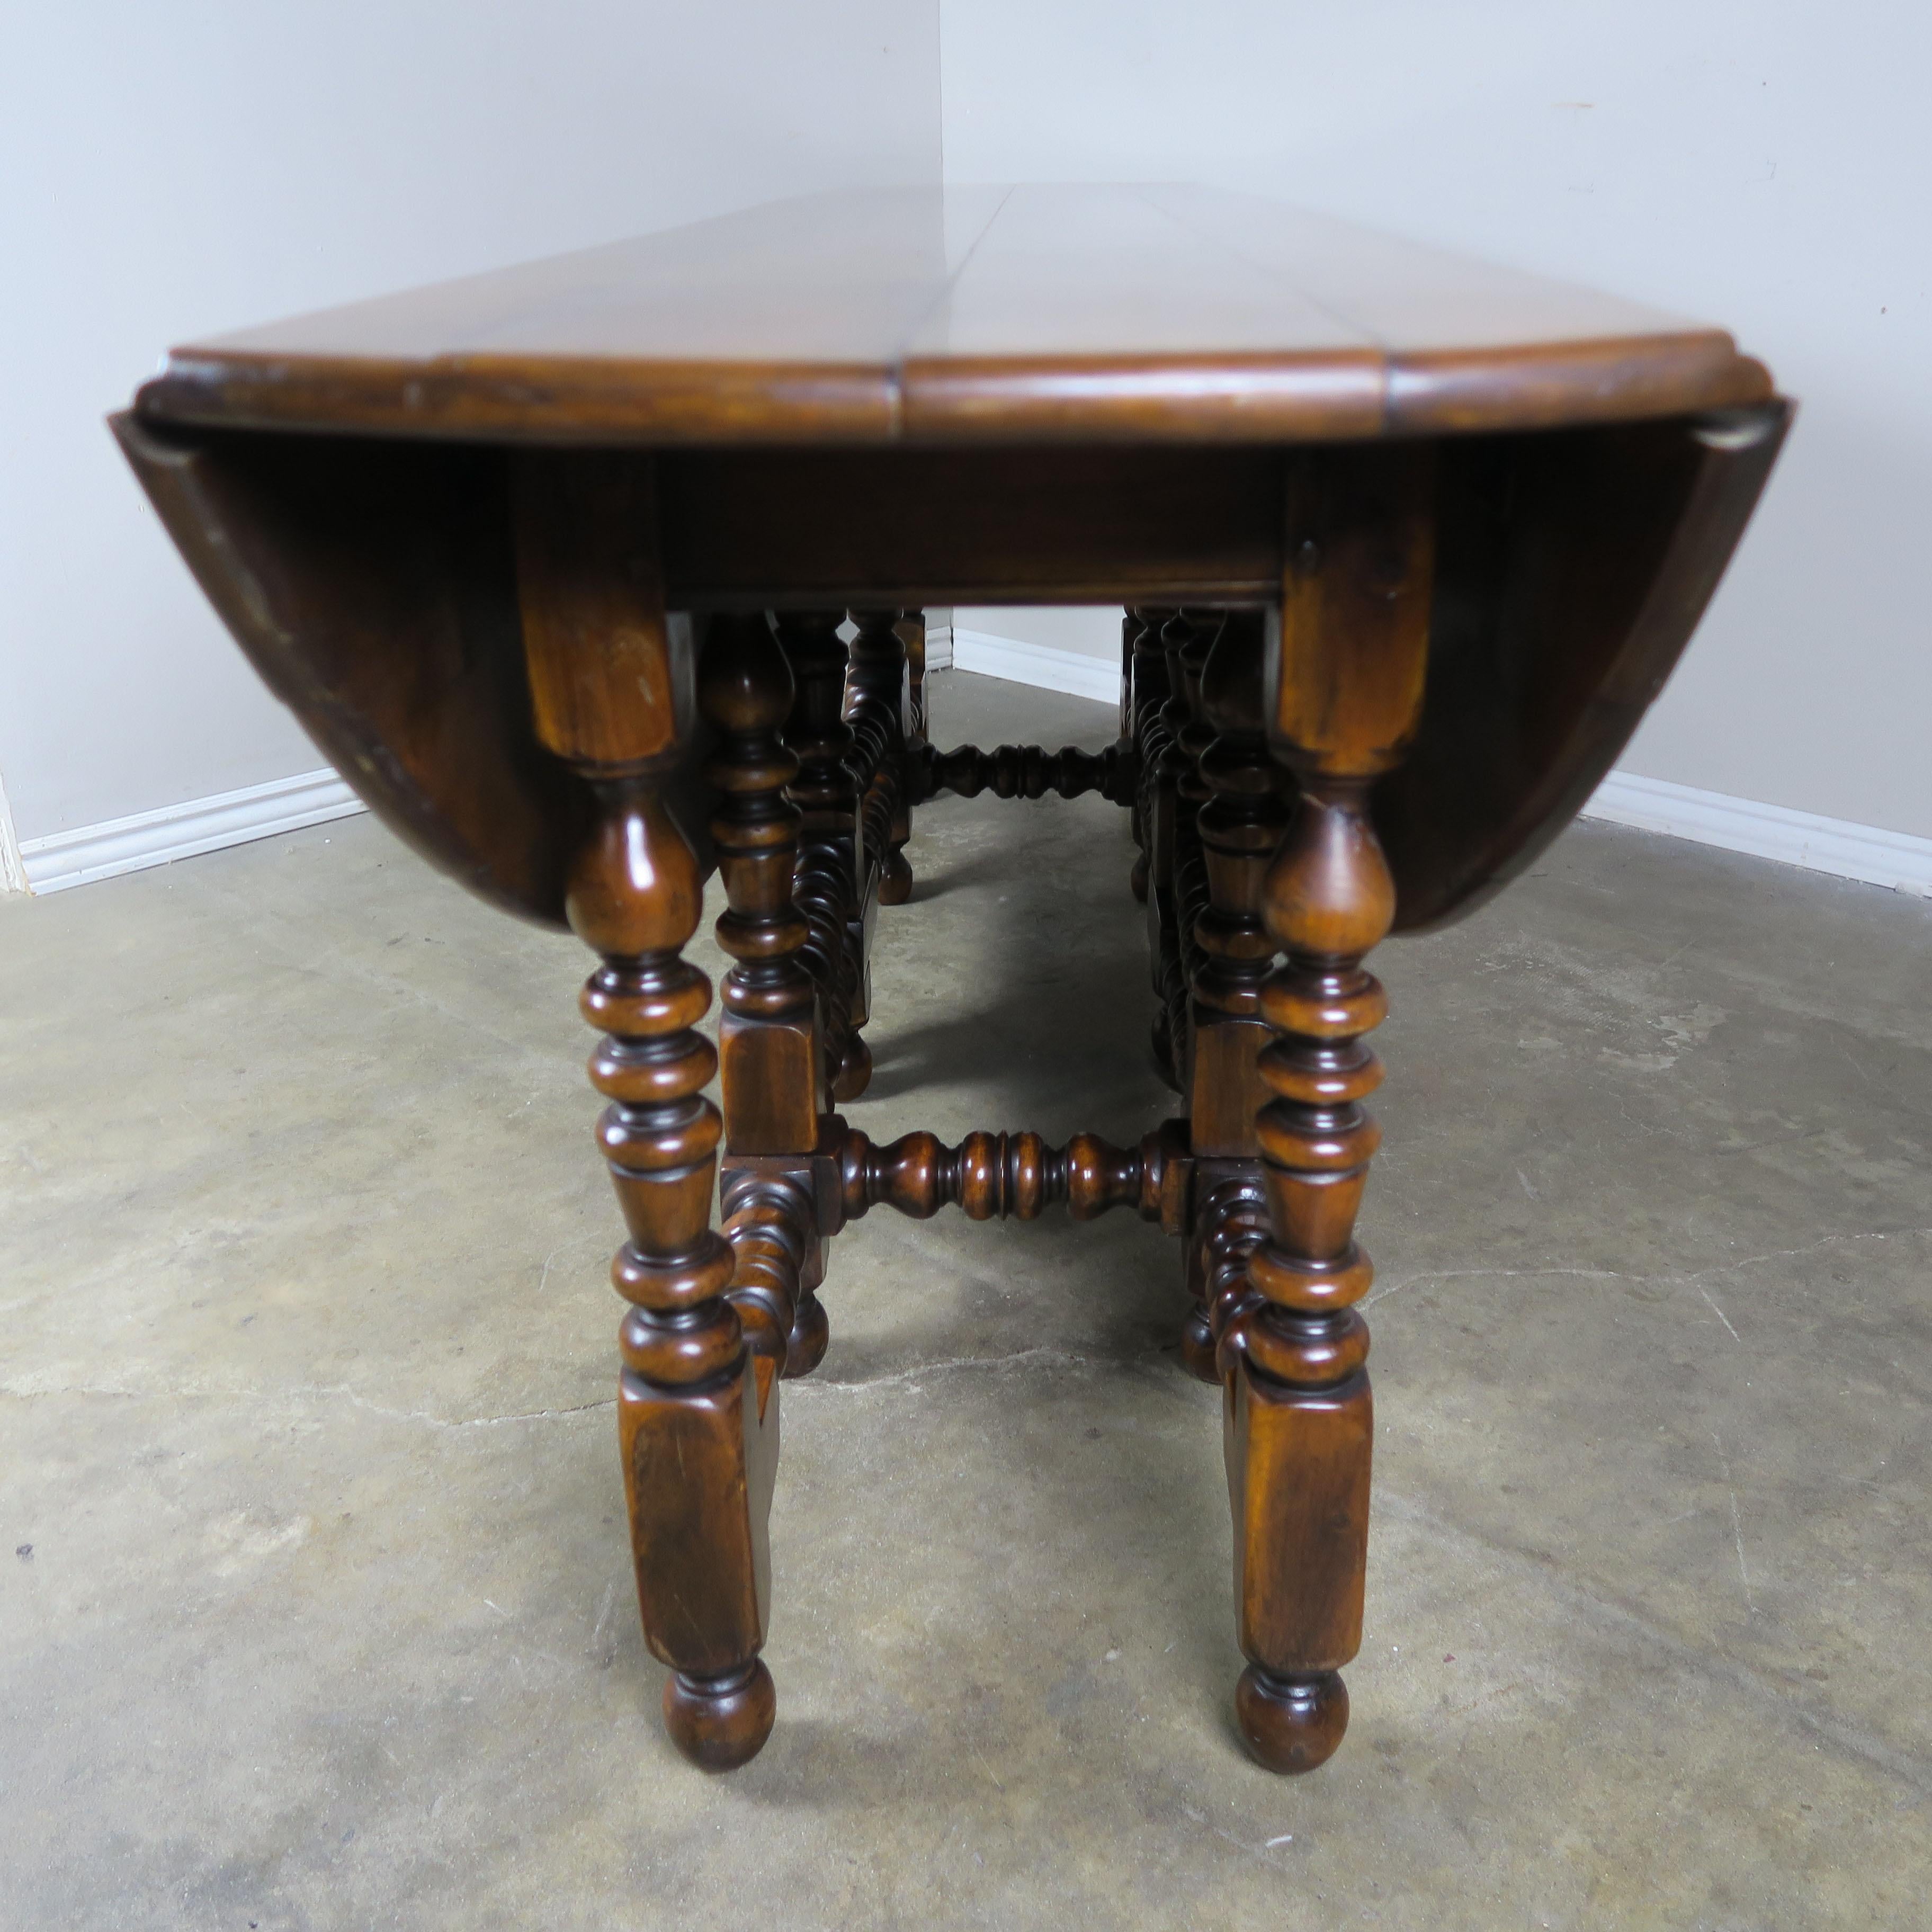 20th Century English Walnut Gate-Leg Drop-Leaf Table